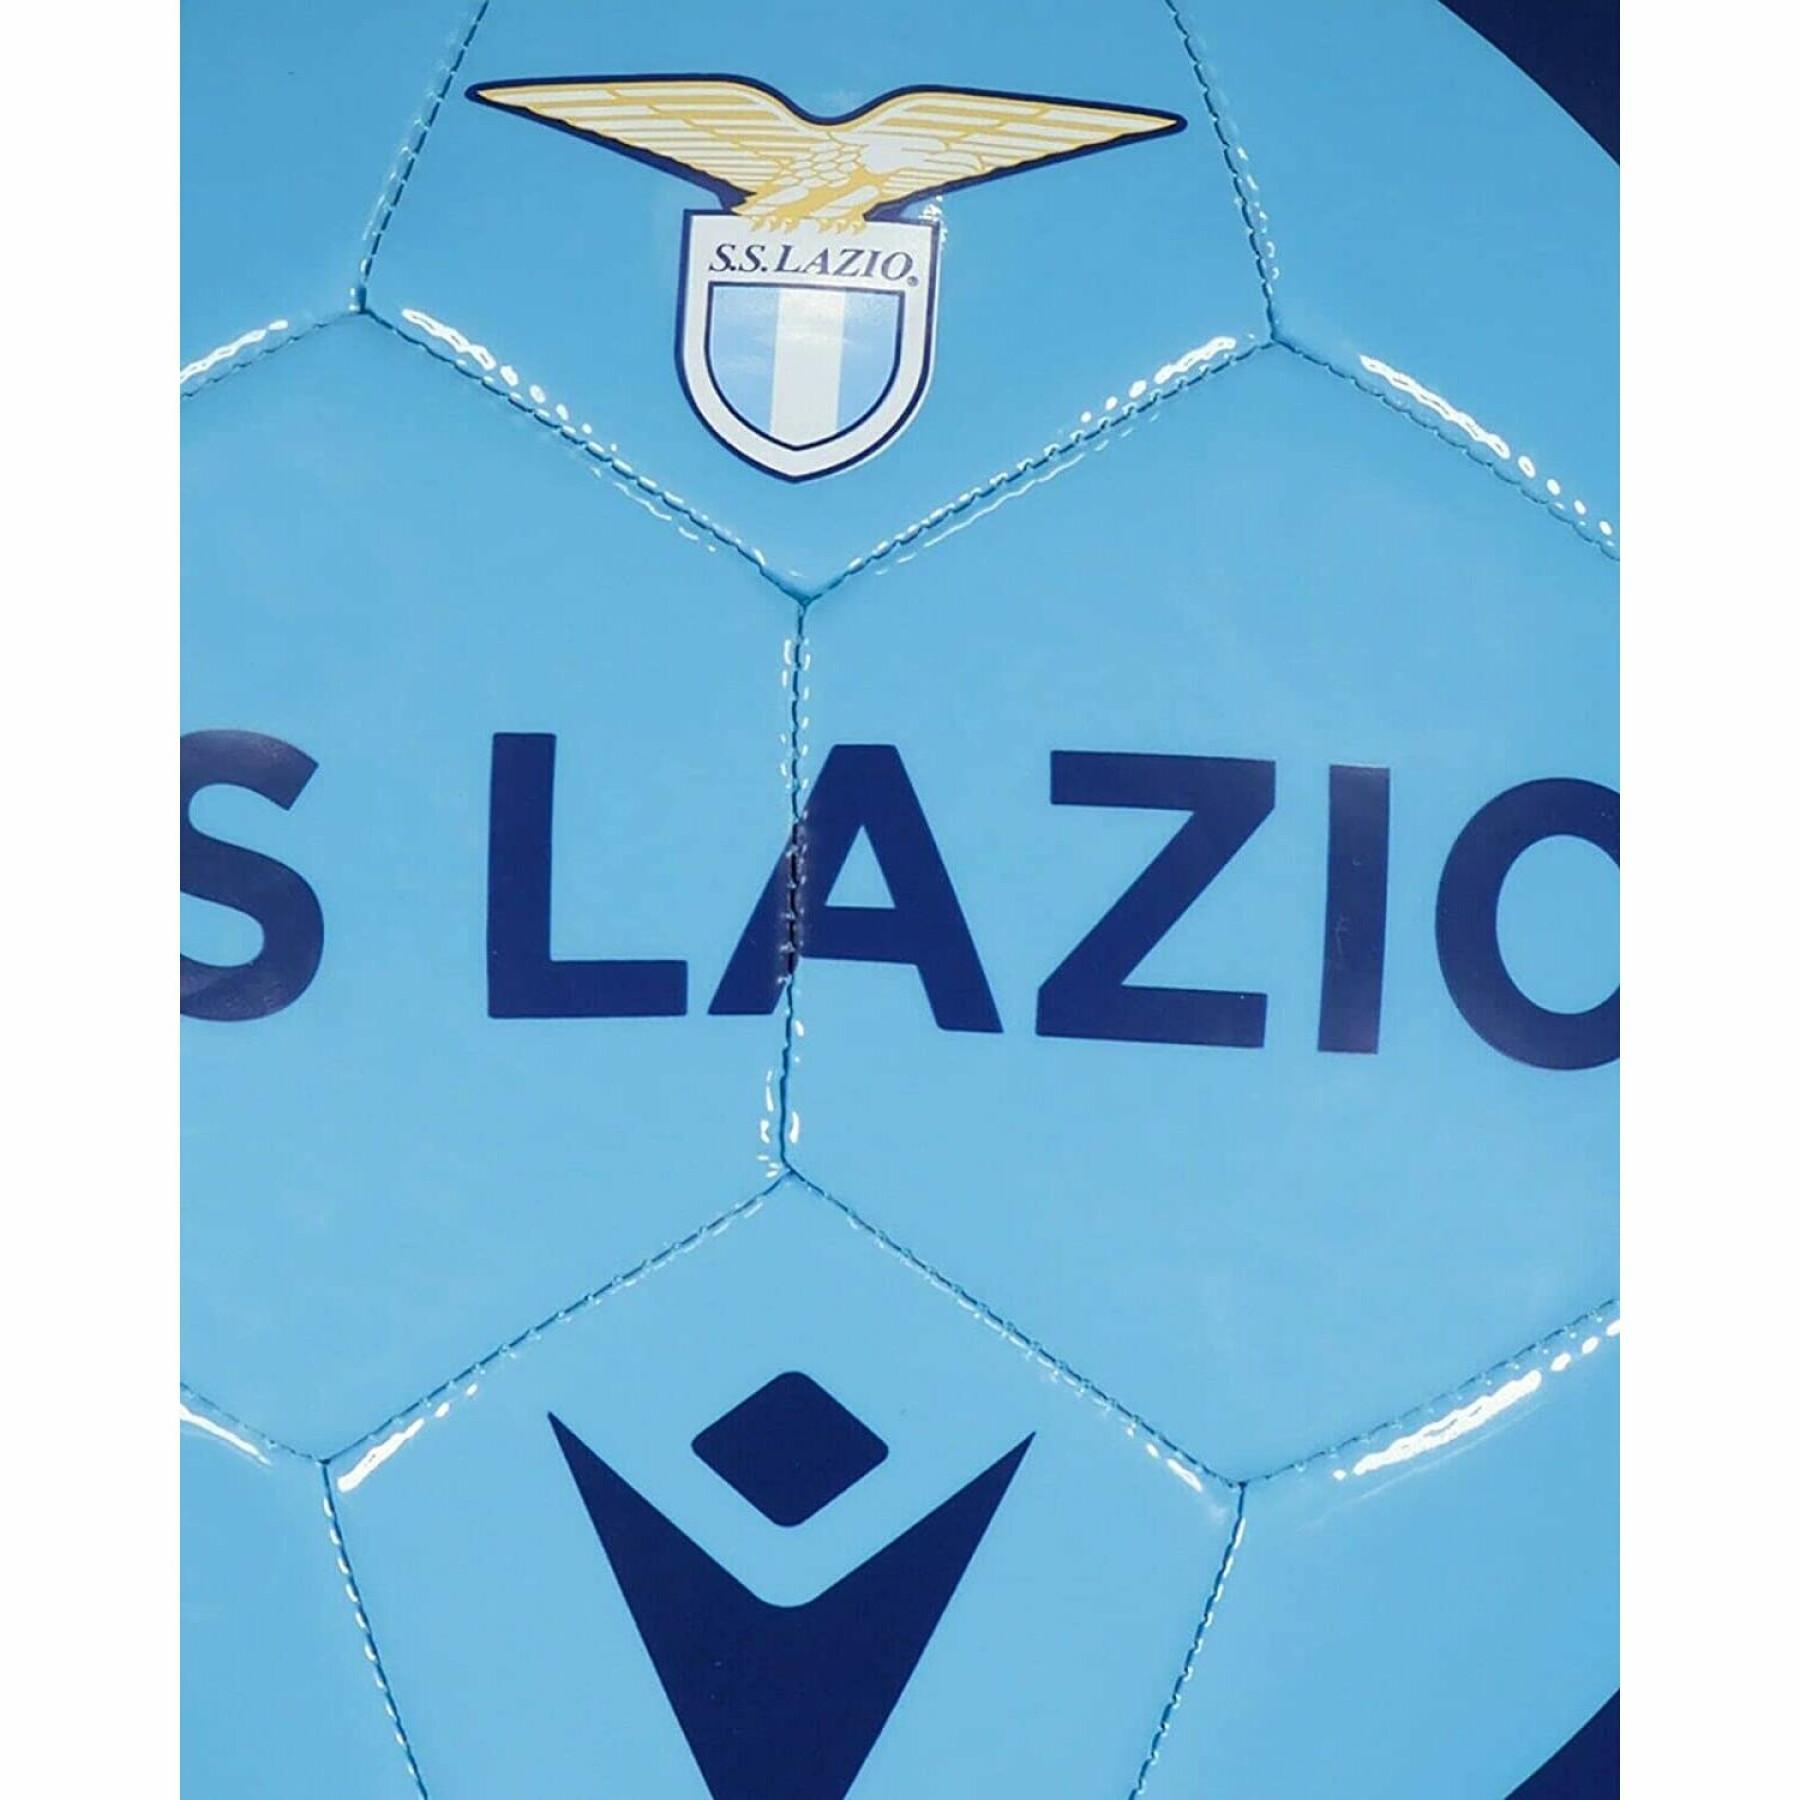 Football Lazio Rome 2021/22